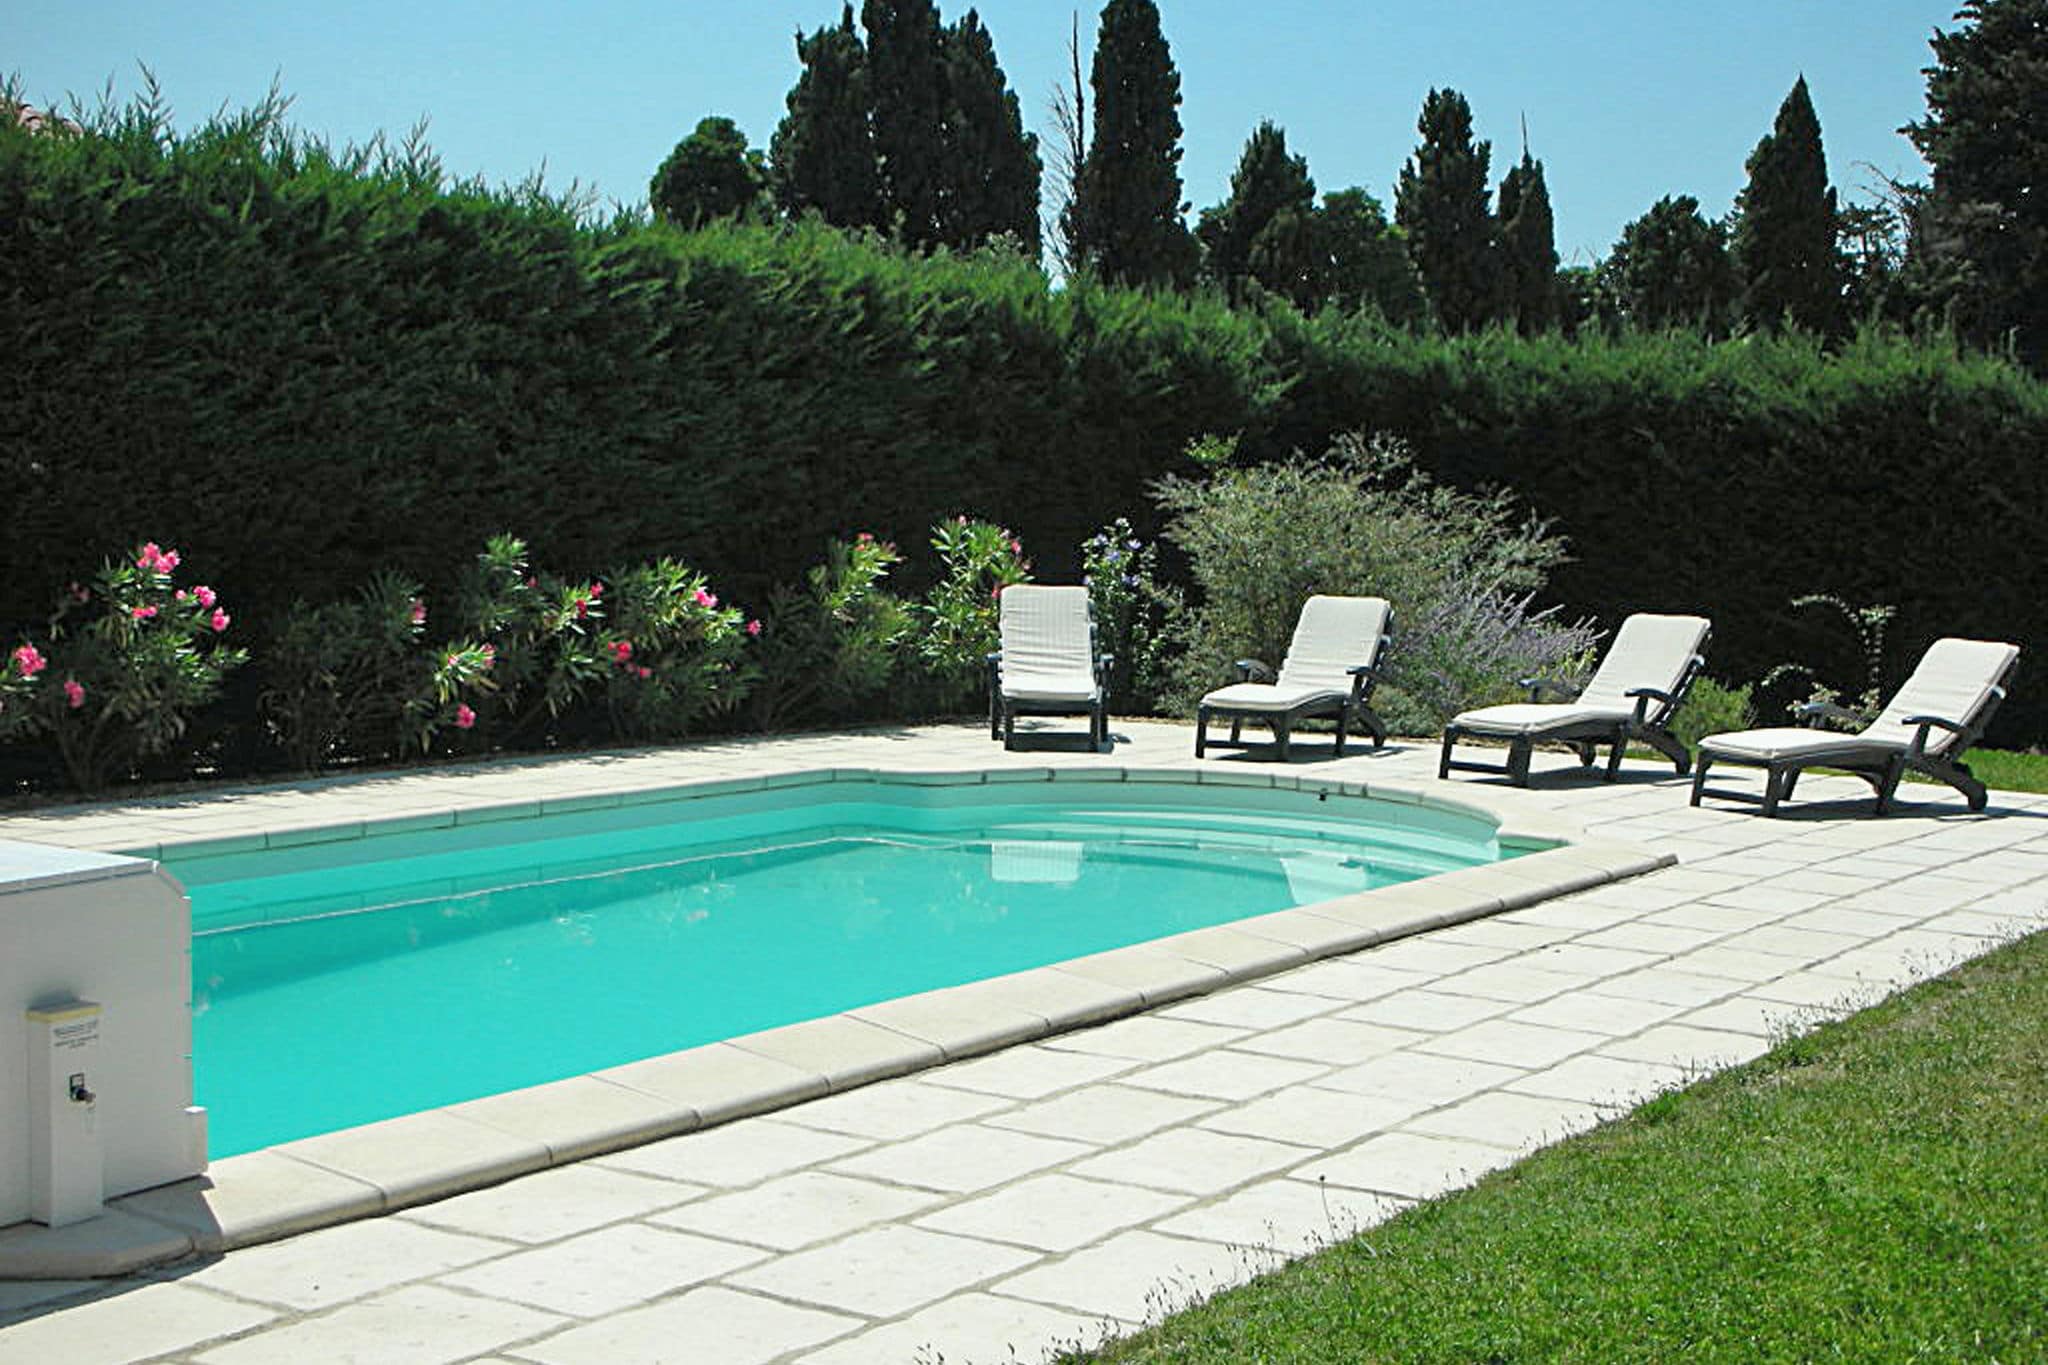 Villa in der Provence mit Garten und überdachter Terrasse